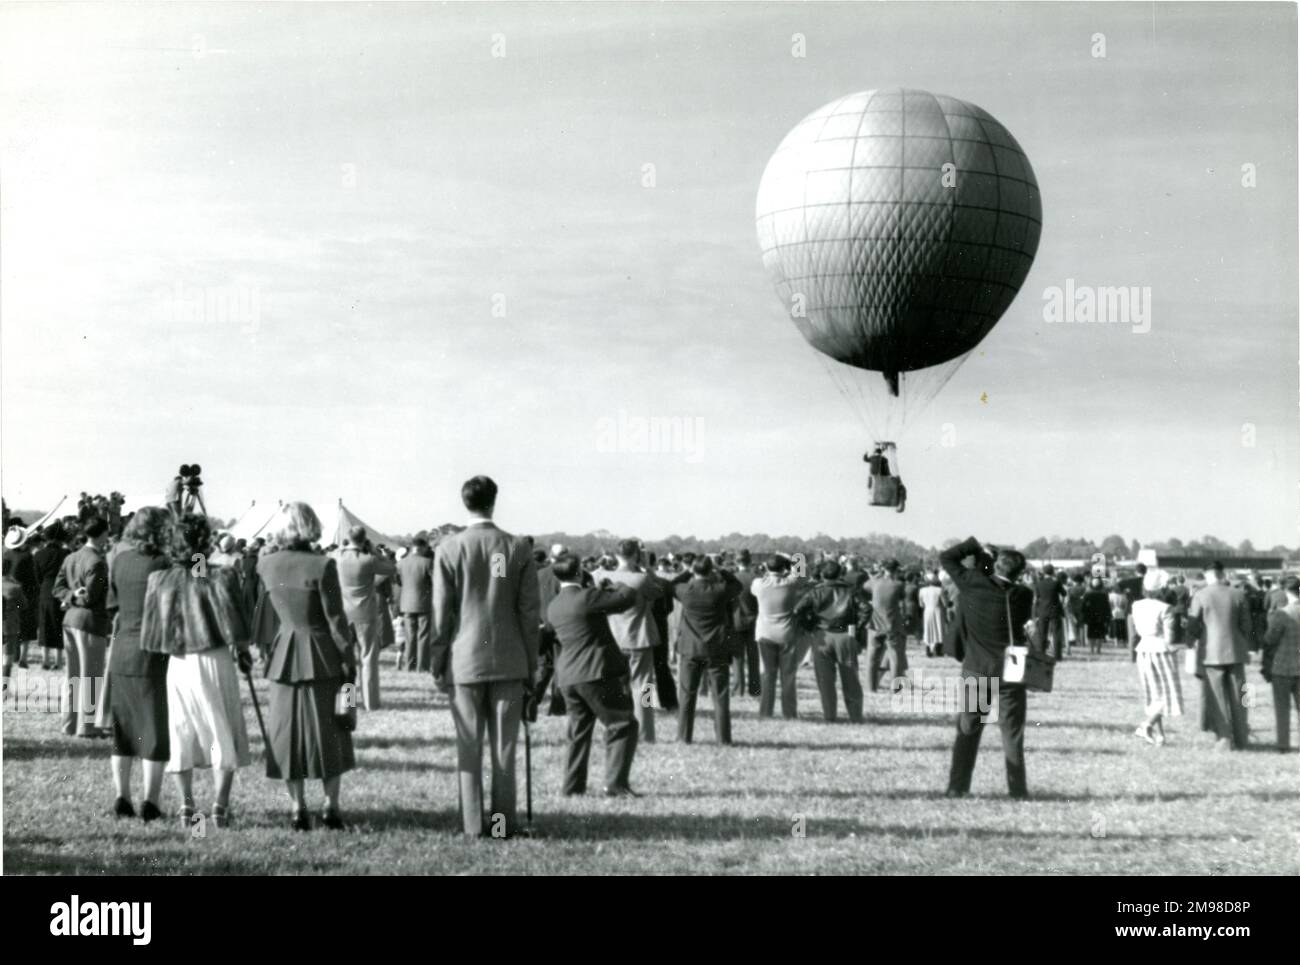 Dr. Harold Roxbee Cox, Präsident der Royal Aeronautical Society 1947-1949, verlässt die 1949. Gartenparty der Royal Aeronautical Society am White Waltham Aerodrome am 8. Mai in einem Wasserstoffballon, der von Charles Dollfus geflogen wird. Stockfoto